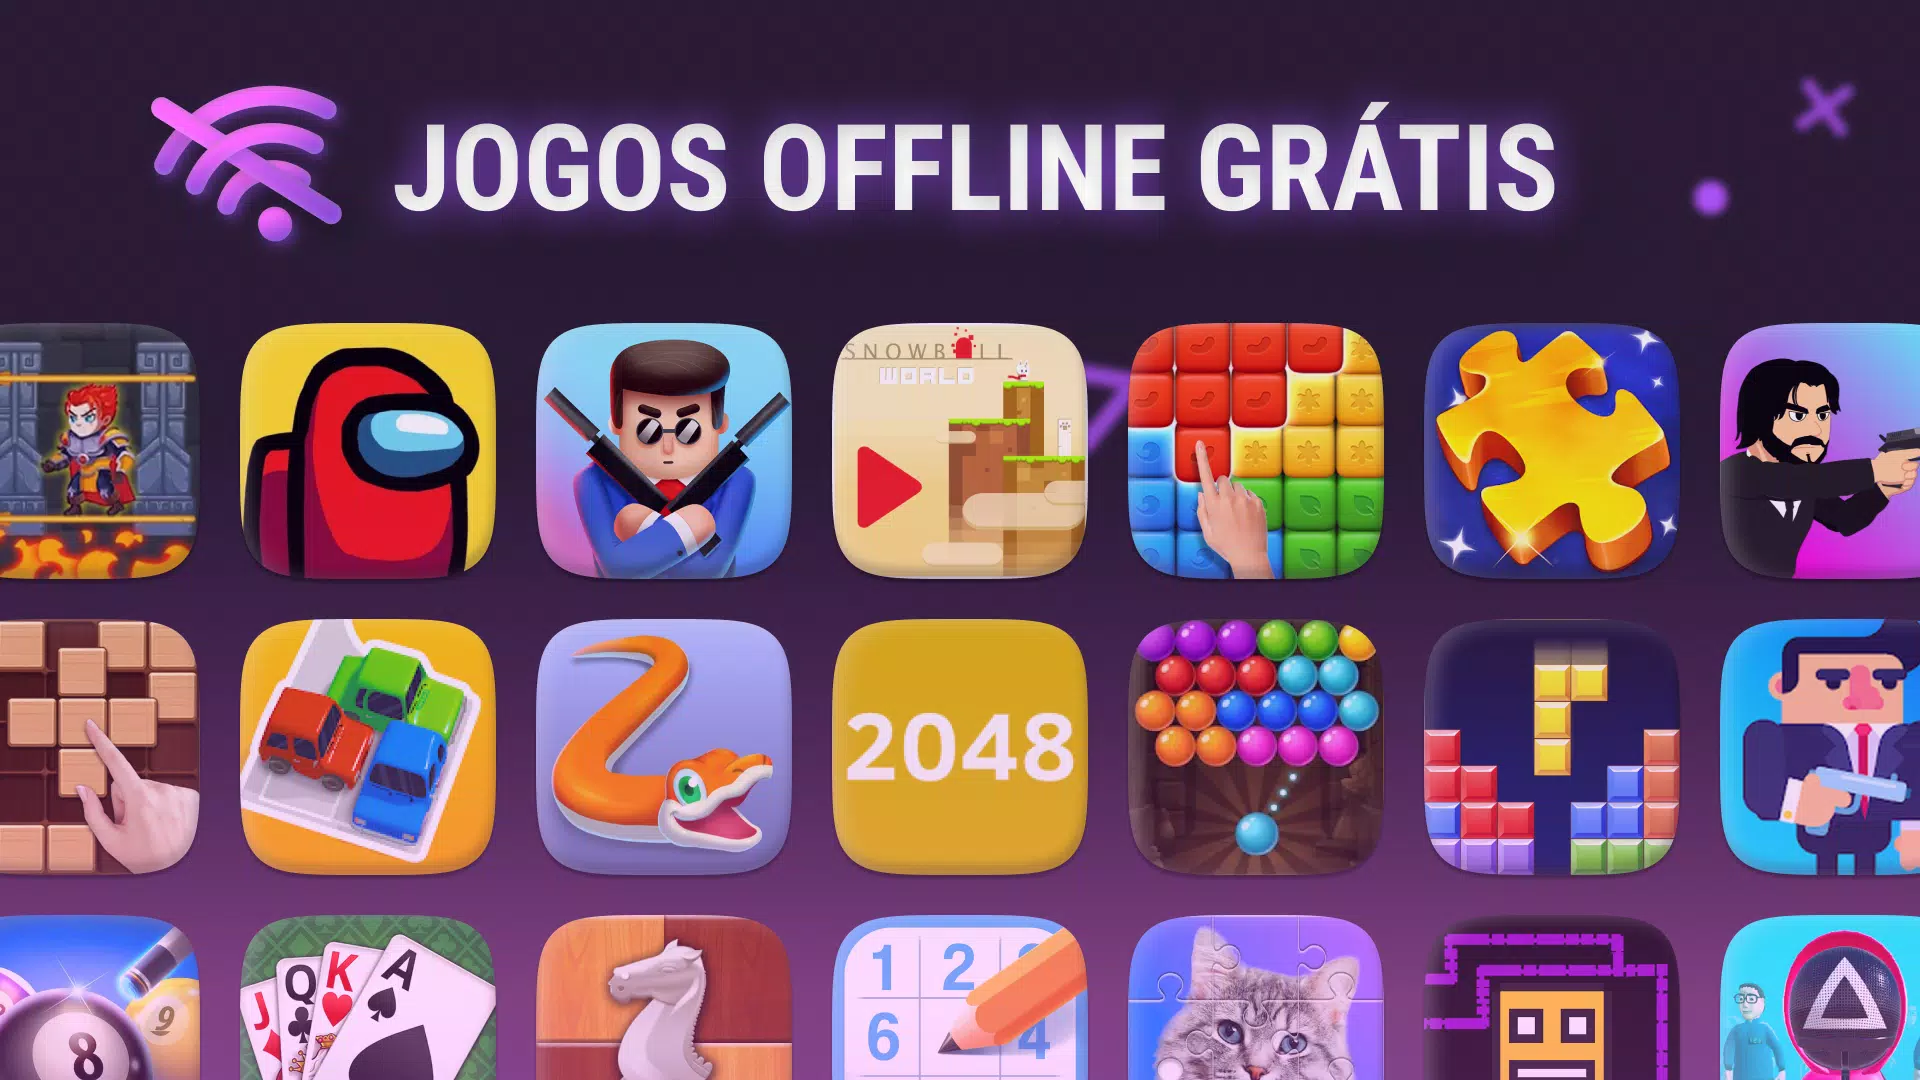 Baixe 25 Jogos Grátis para Jogar Offline no Android #1 - Mobile Gamer